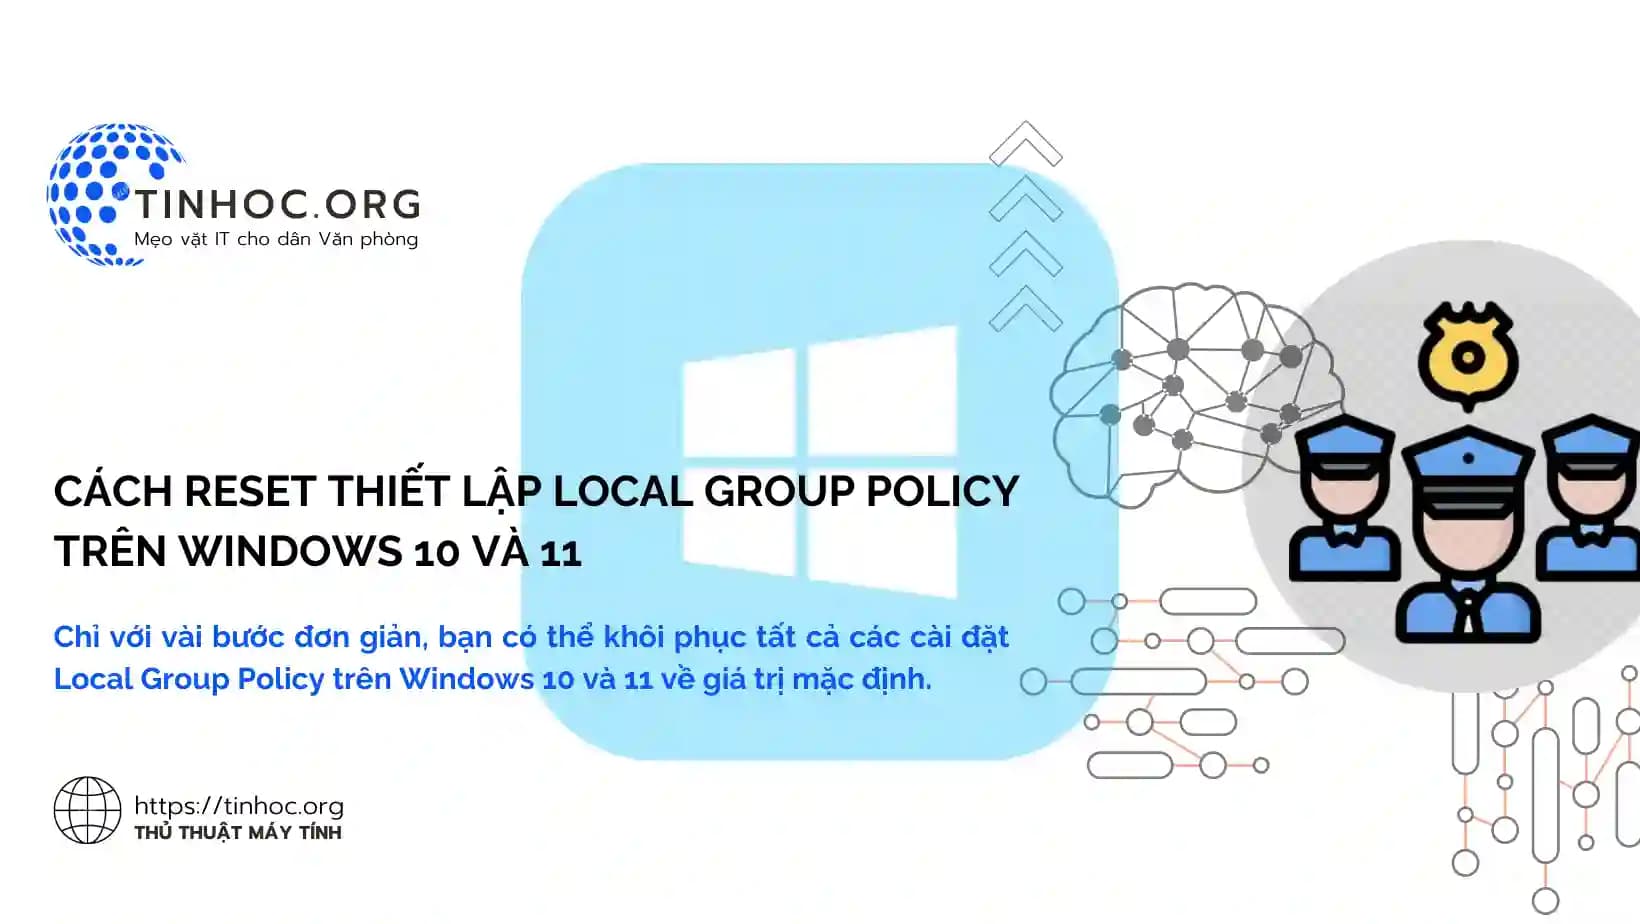 Chỉ với vài bước đơn giản, bạn có thể khôi phục tất cả các cài đặt Local Group Policy trên Windows 10 và 11 về giá trị mặc định.